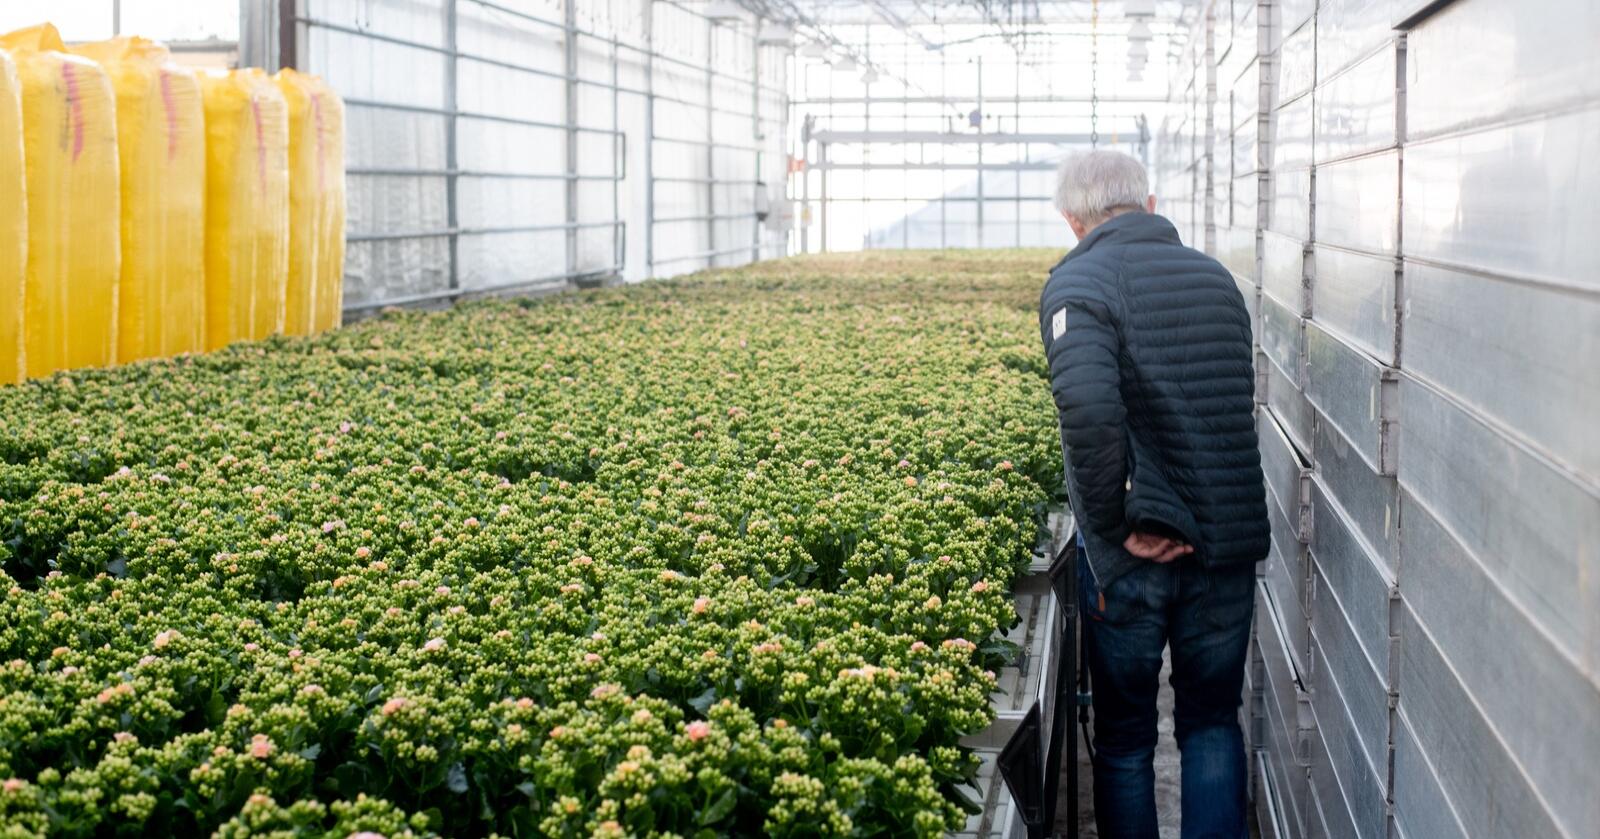 Regjeringa har vurdert å vrake strømstøtte til blomsterprodusenter. Foto: Vidar Sandnes